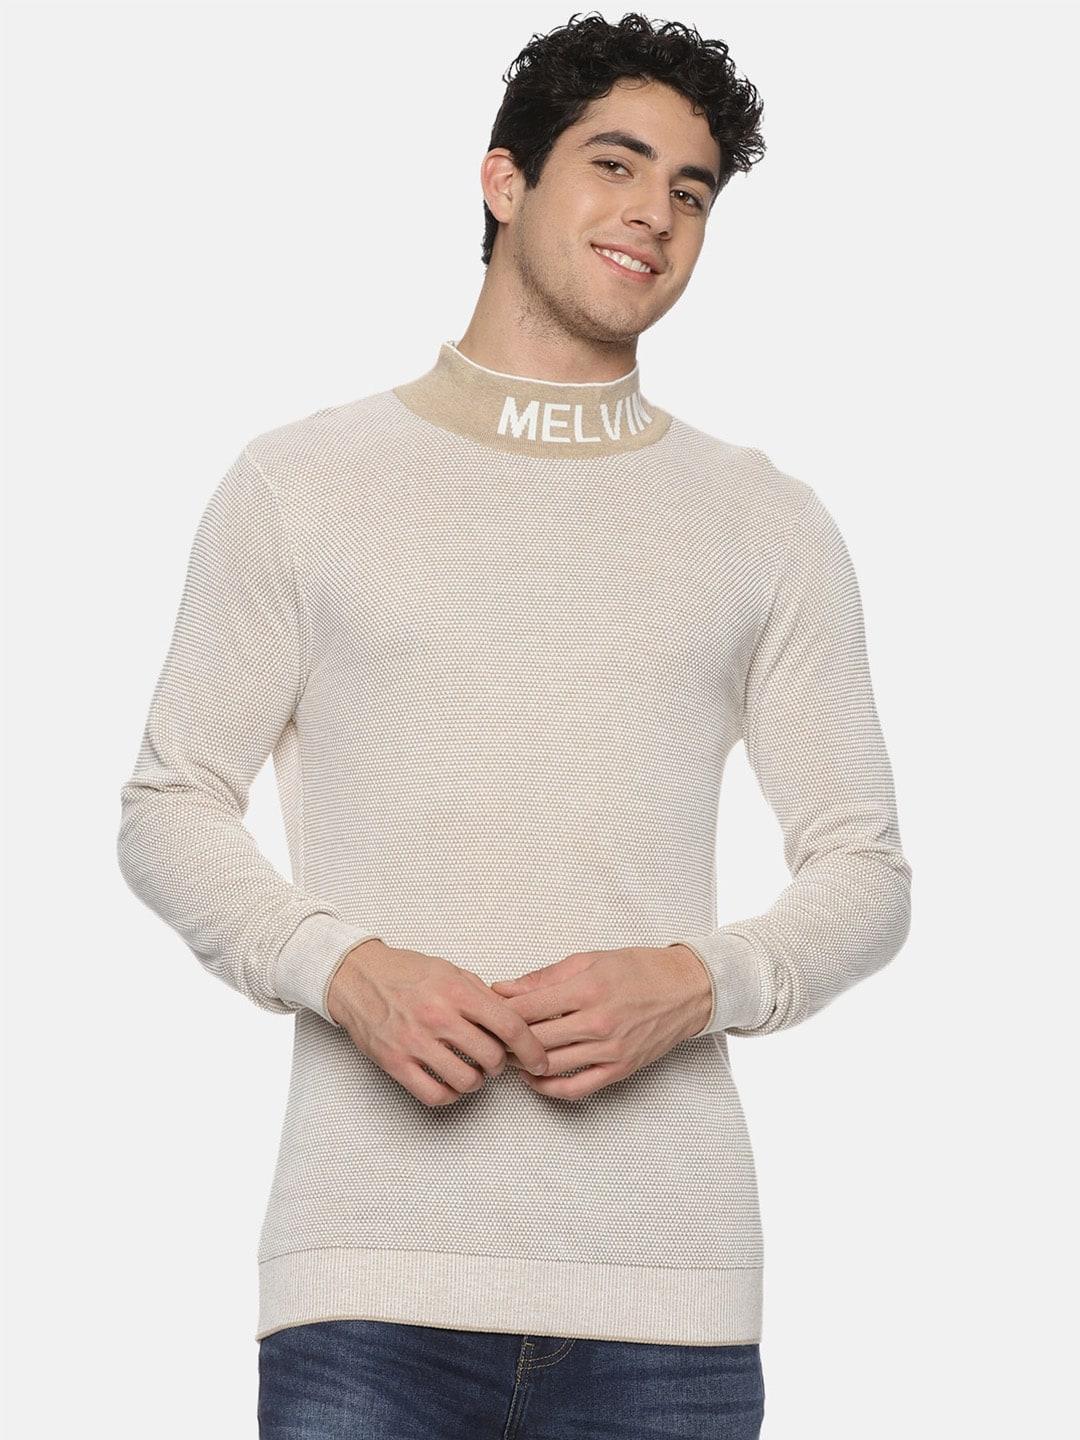 melvin-jones-mock-collar-pure-cotton-sweatshirt